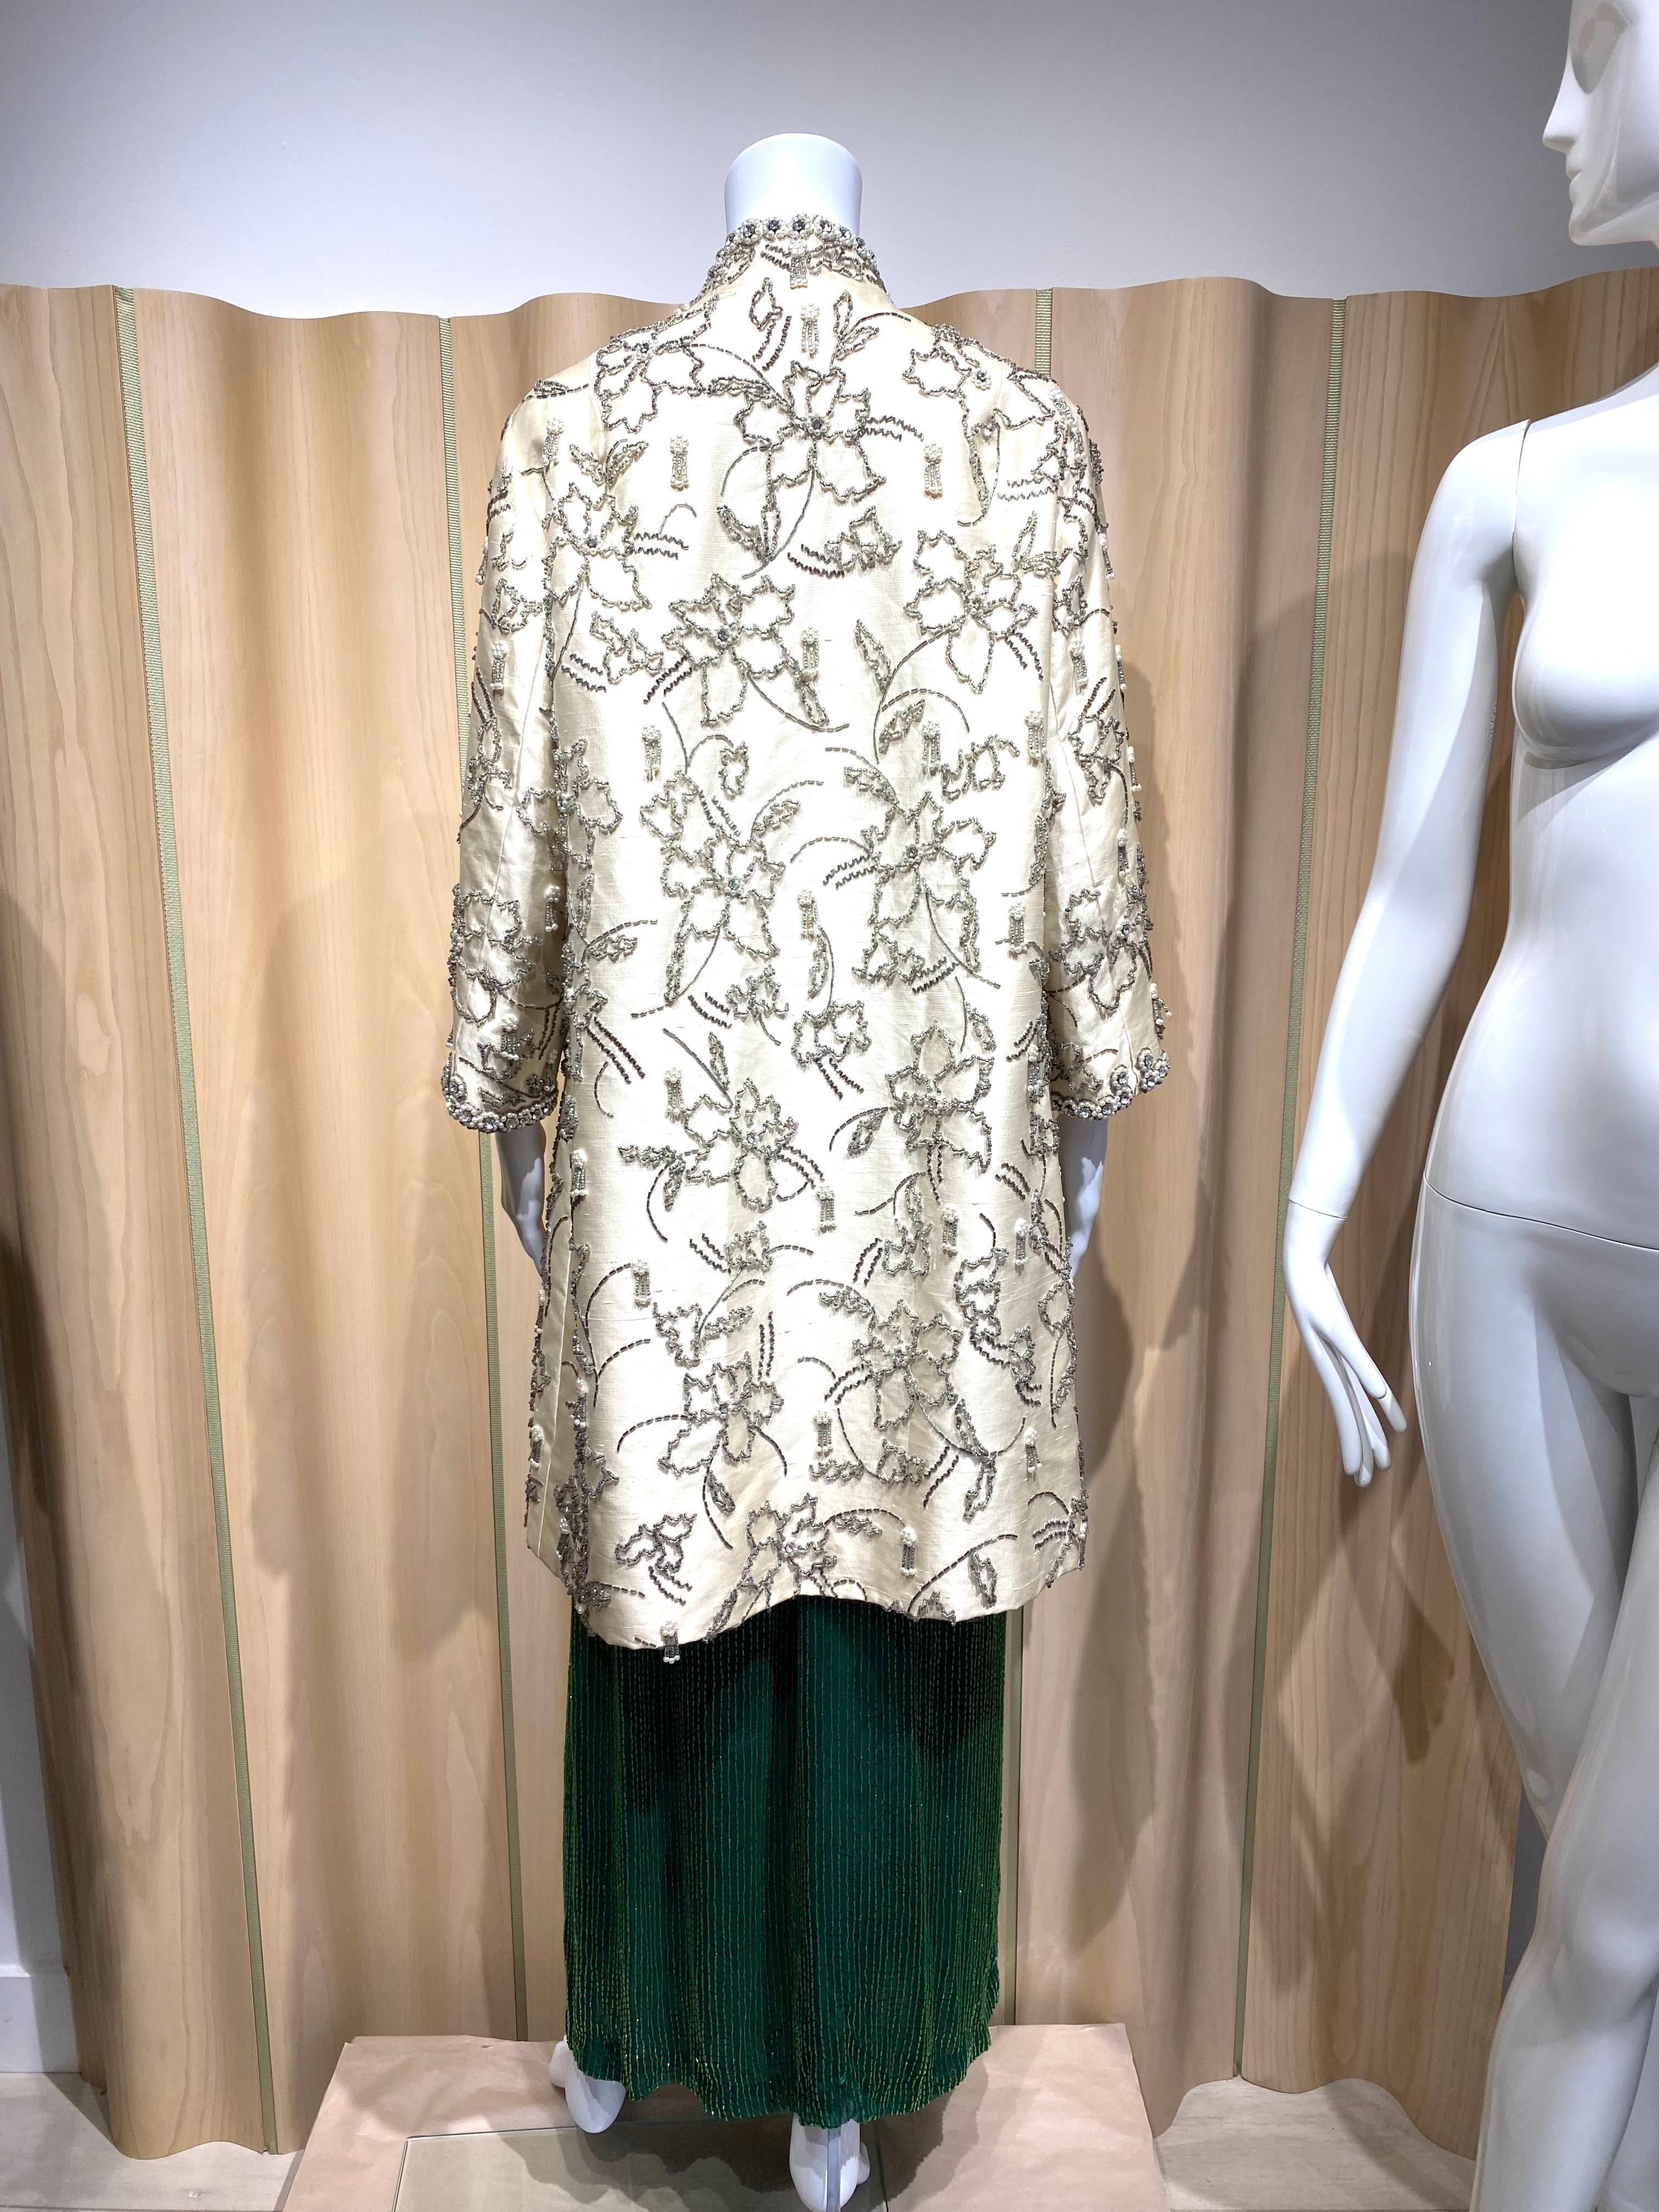 1960er Jahre Abendmantel aus cremefarbener Seide, verziert mit Perlen und Strasssteinen. Perfekter Mantel für die Hochzeitsprobe oder Cocktailparty.
Stoff : Seide
Größe Large
Messung:
